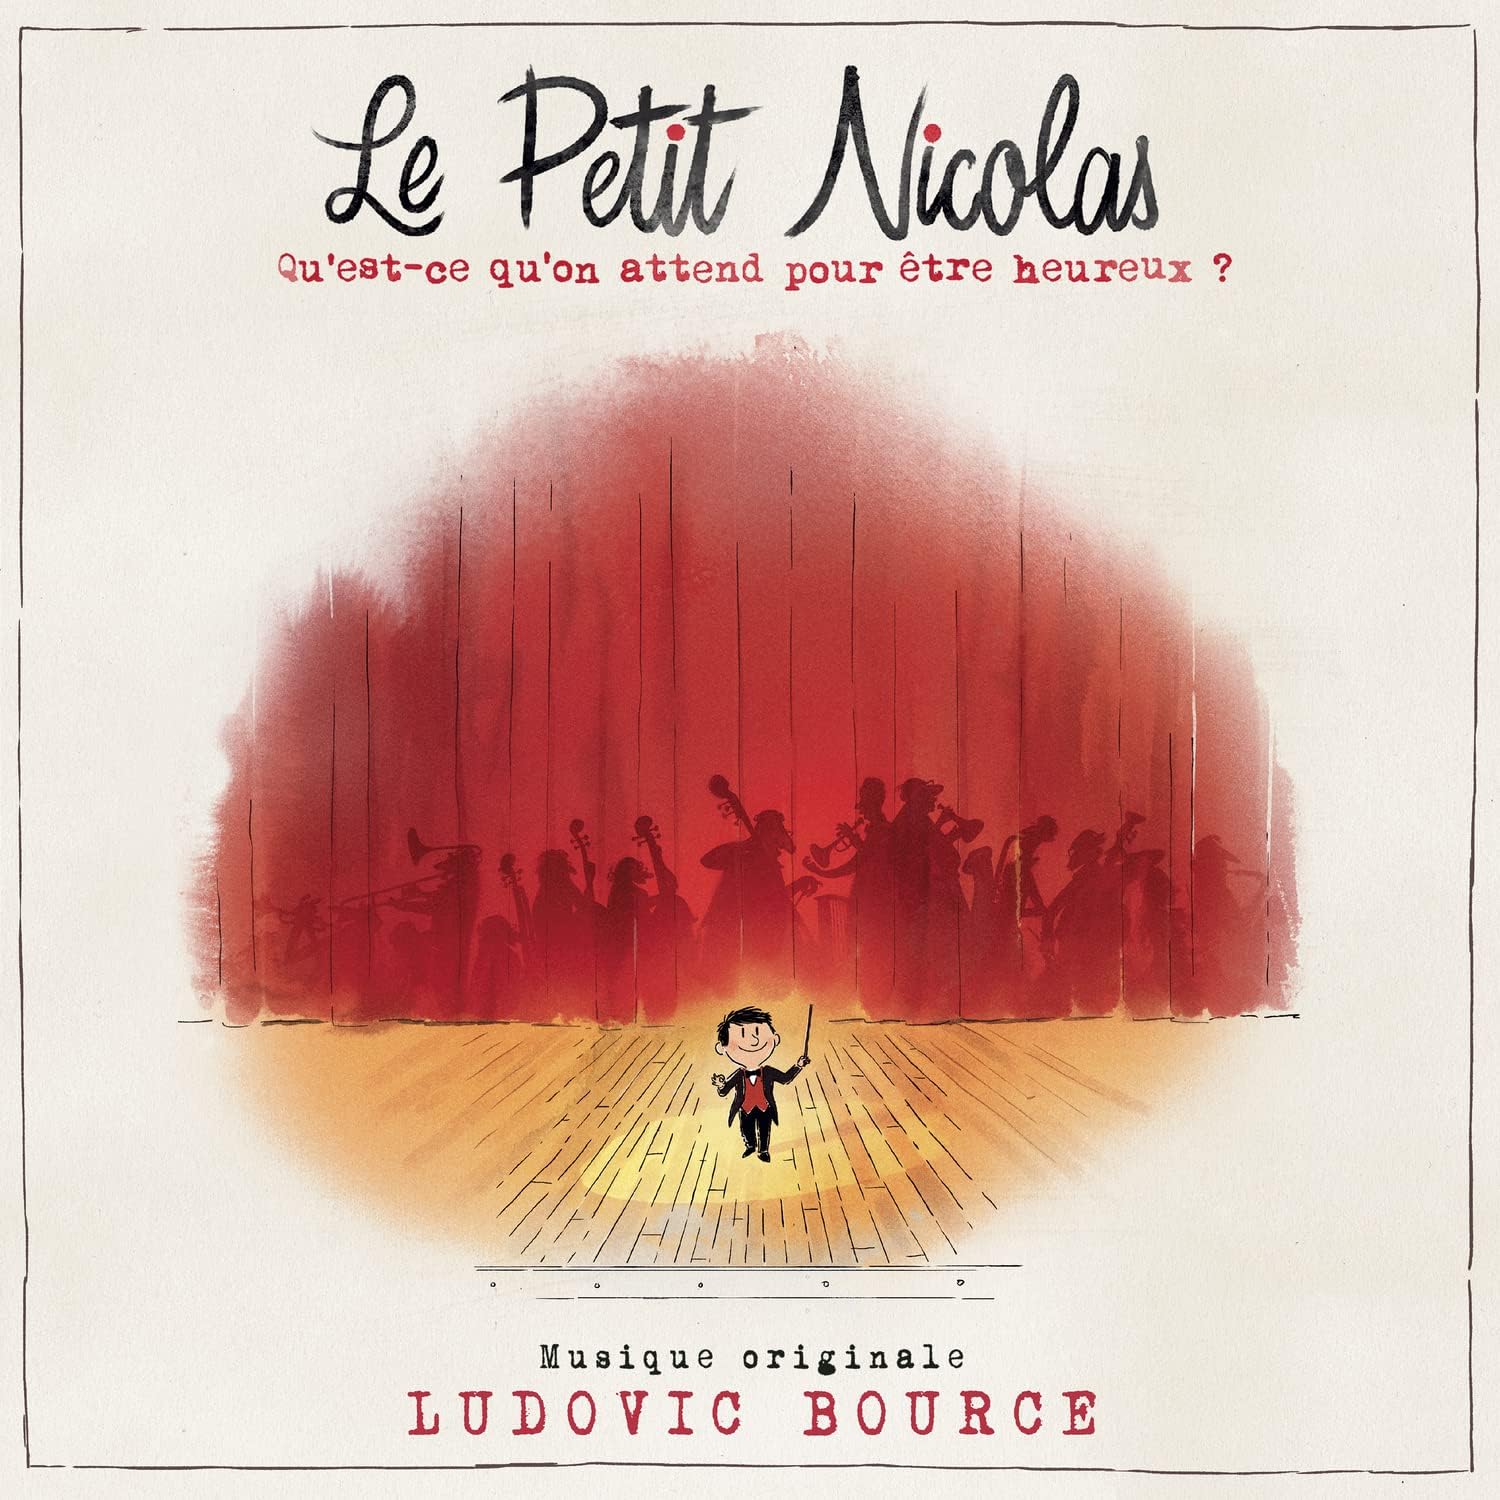 Disponibile la colonna sonora composta da Ludovic Bource per il film animato "Le Petit Nicolas" al cinema con I Wonder Pictures